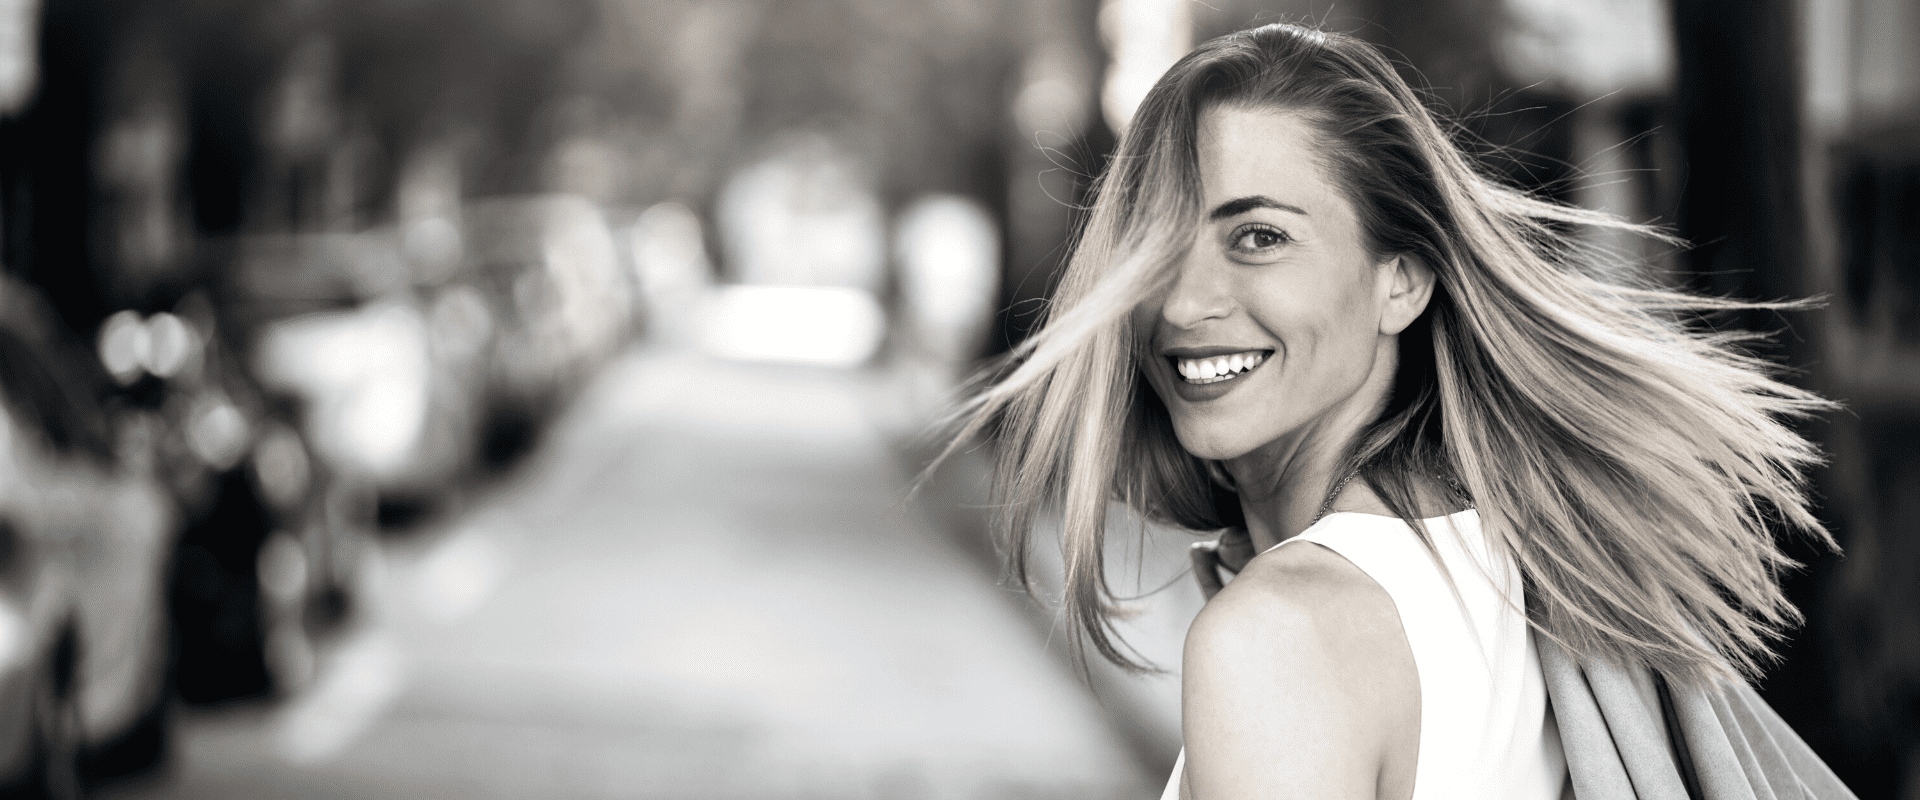 Une photo en noir et blanc d'une belle femme heureuse et épanouie